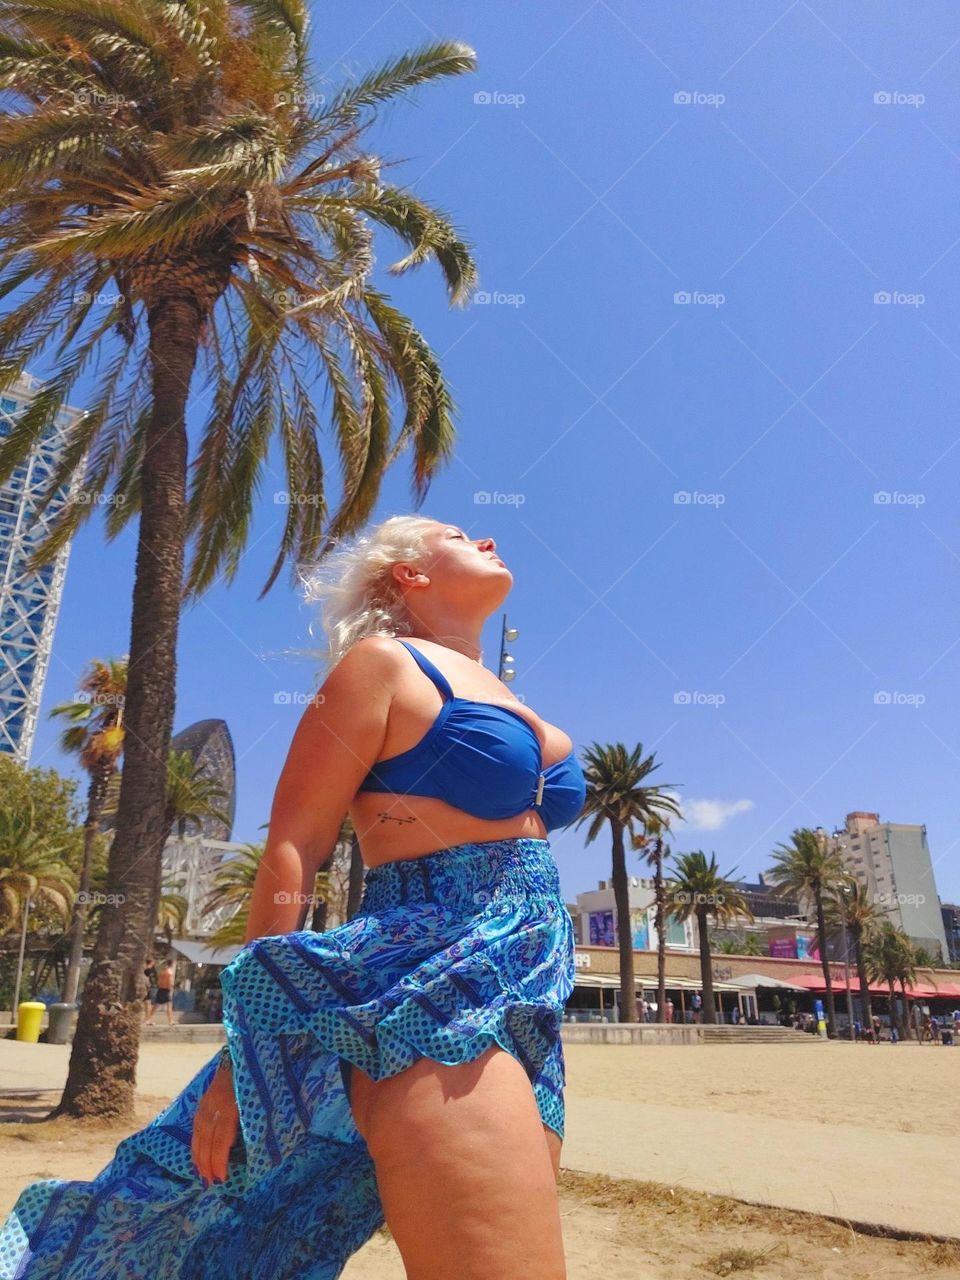 Woman in blue enjoying the sun